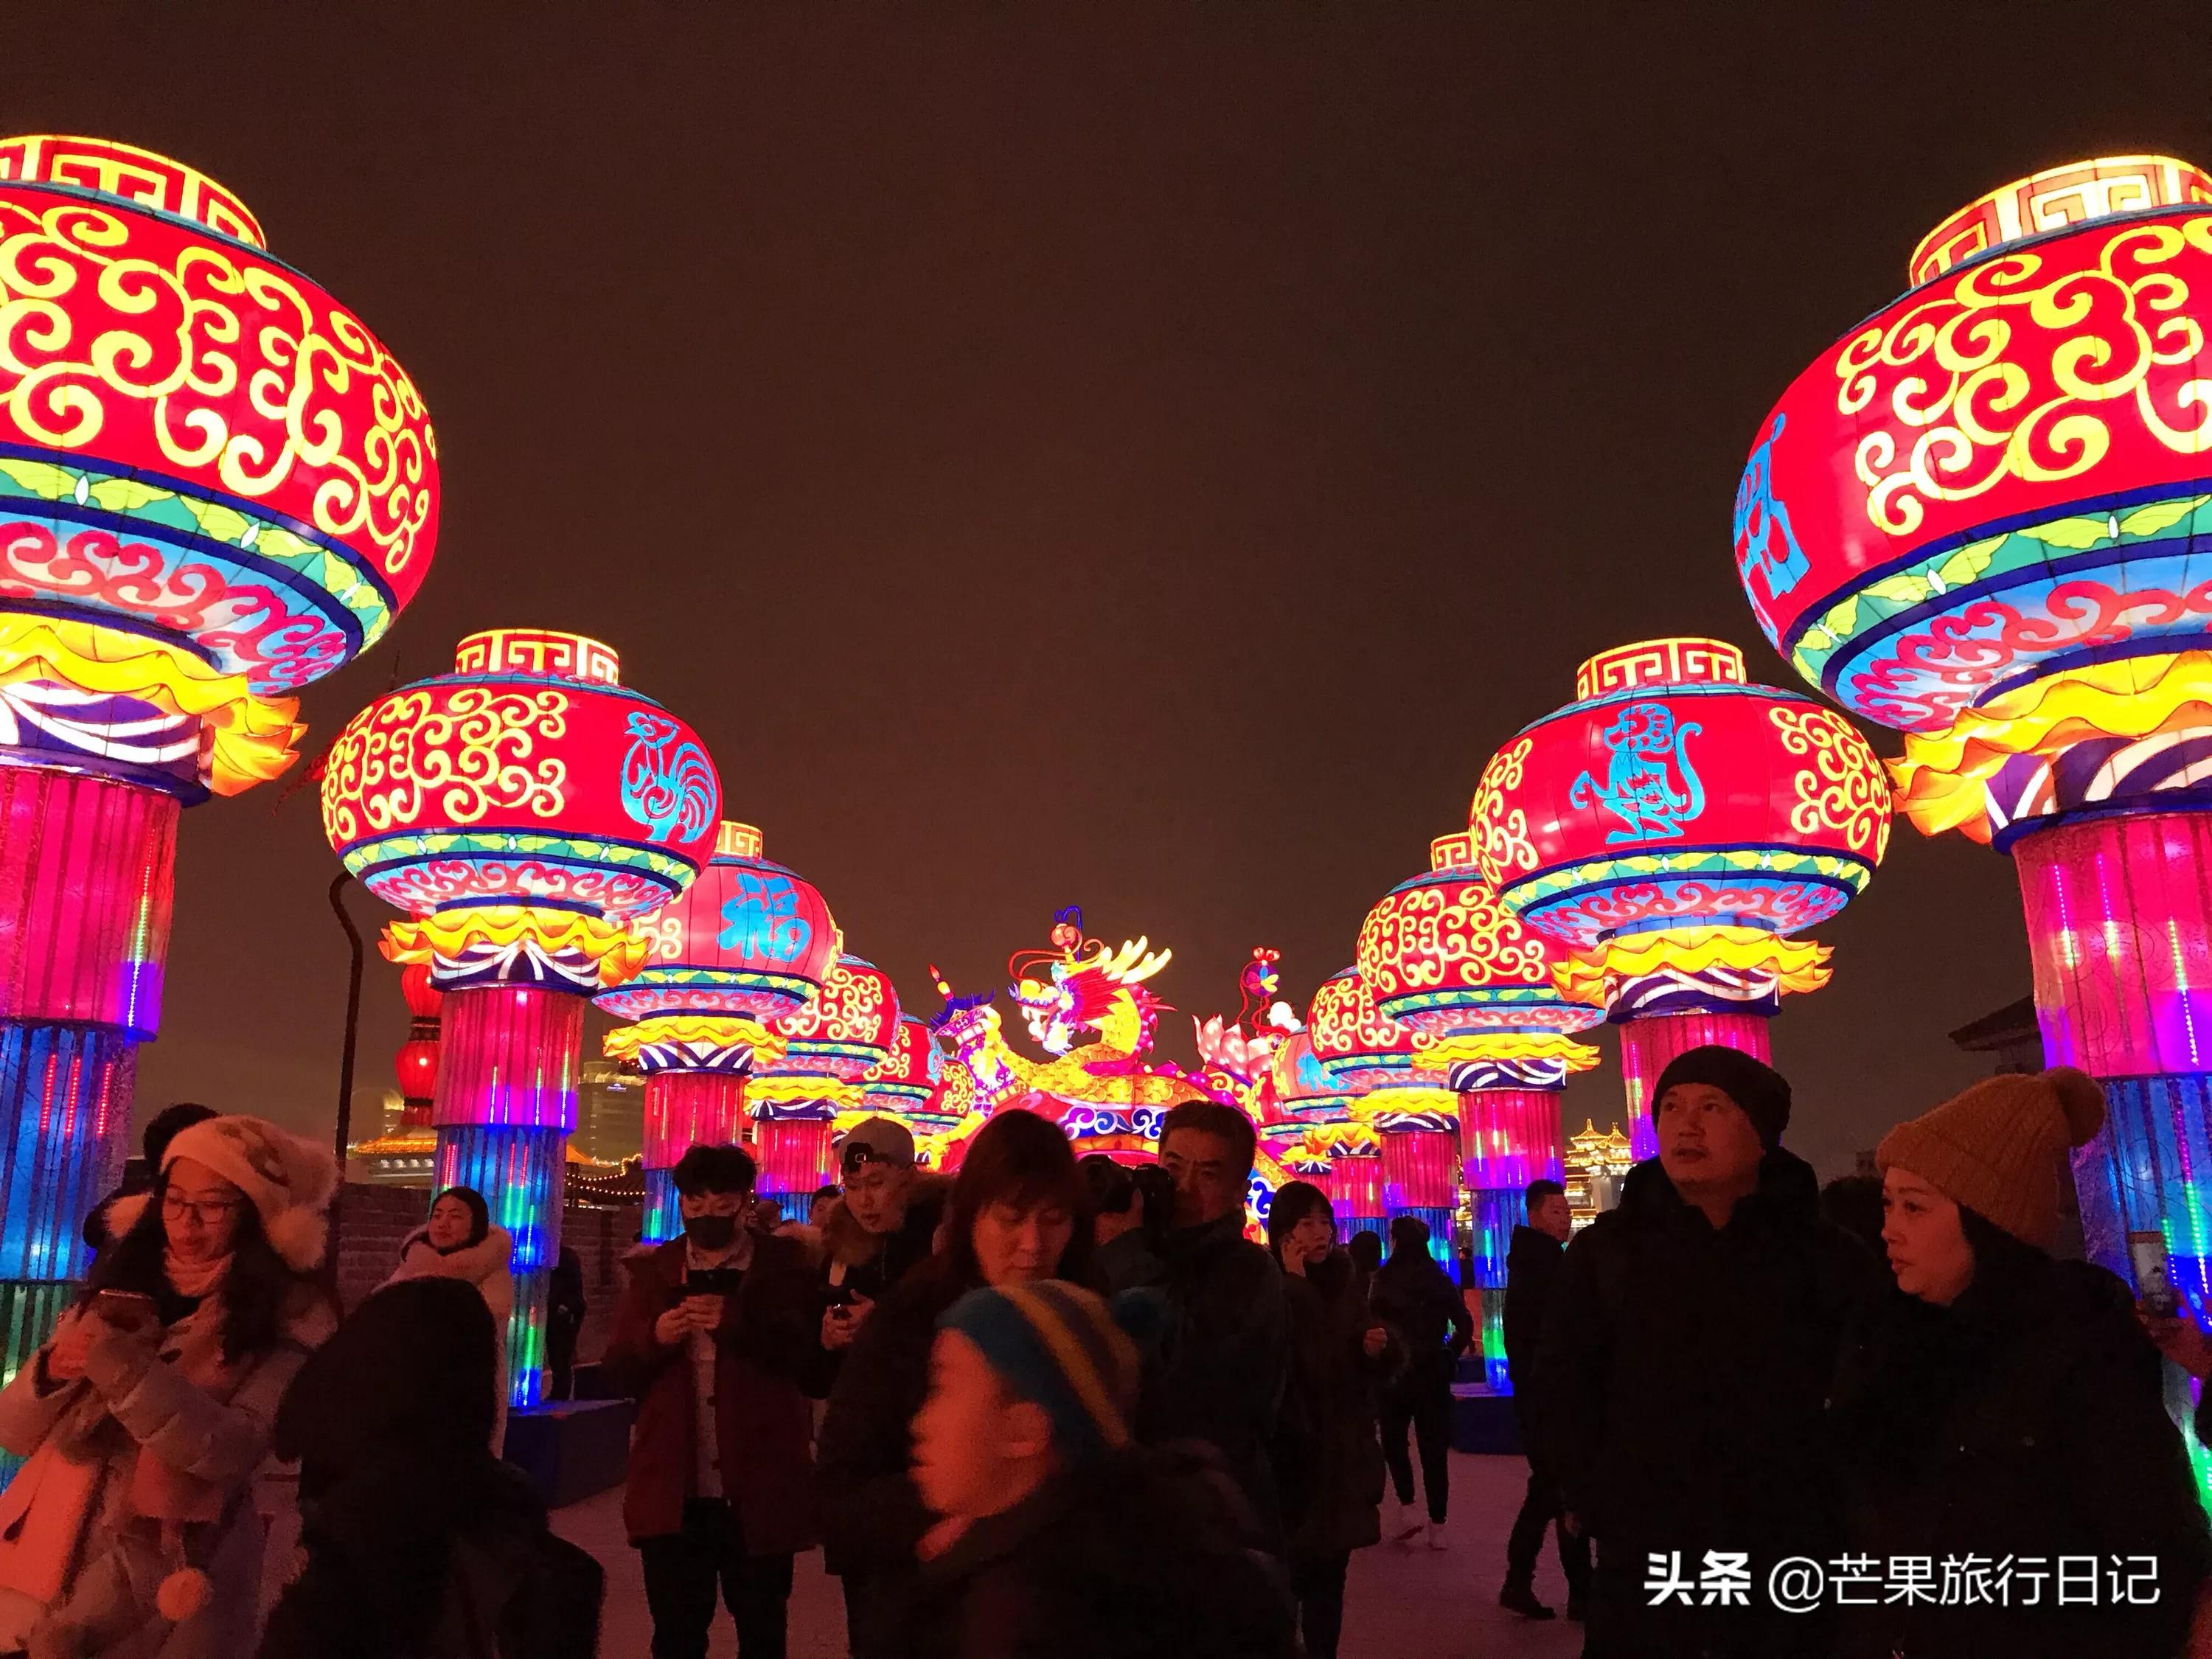 2019年春节热门旅游目的地城市排名:重 - 今日